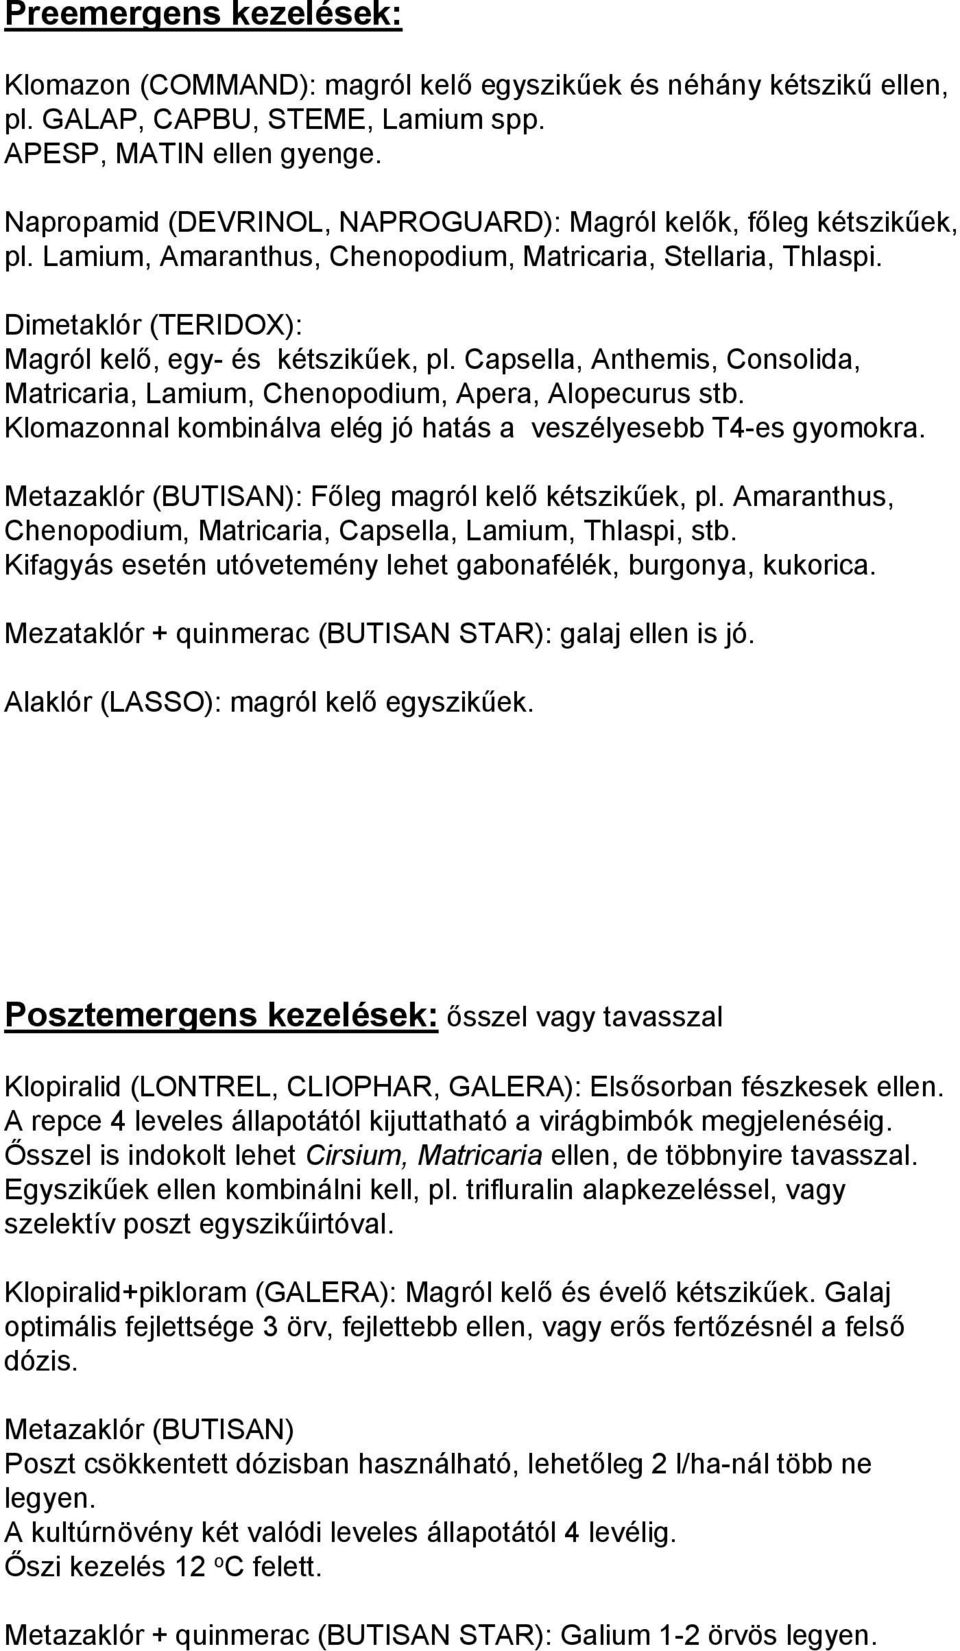 Capsella, Anthemis, Consolida, Matricaria, Lamium, Chenopodium, Apera, Alopecurus stb. Klomazonnal kombinálva elég jó hatás a veszélyesebb T4-es gyomokra.